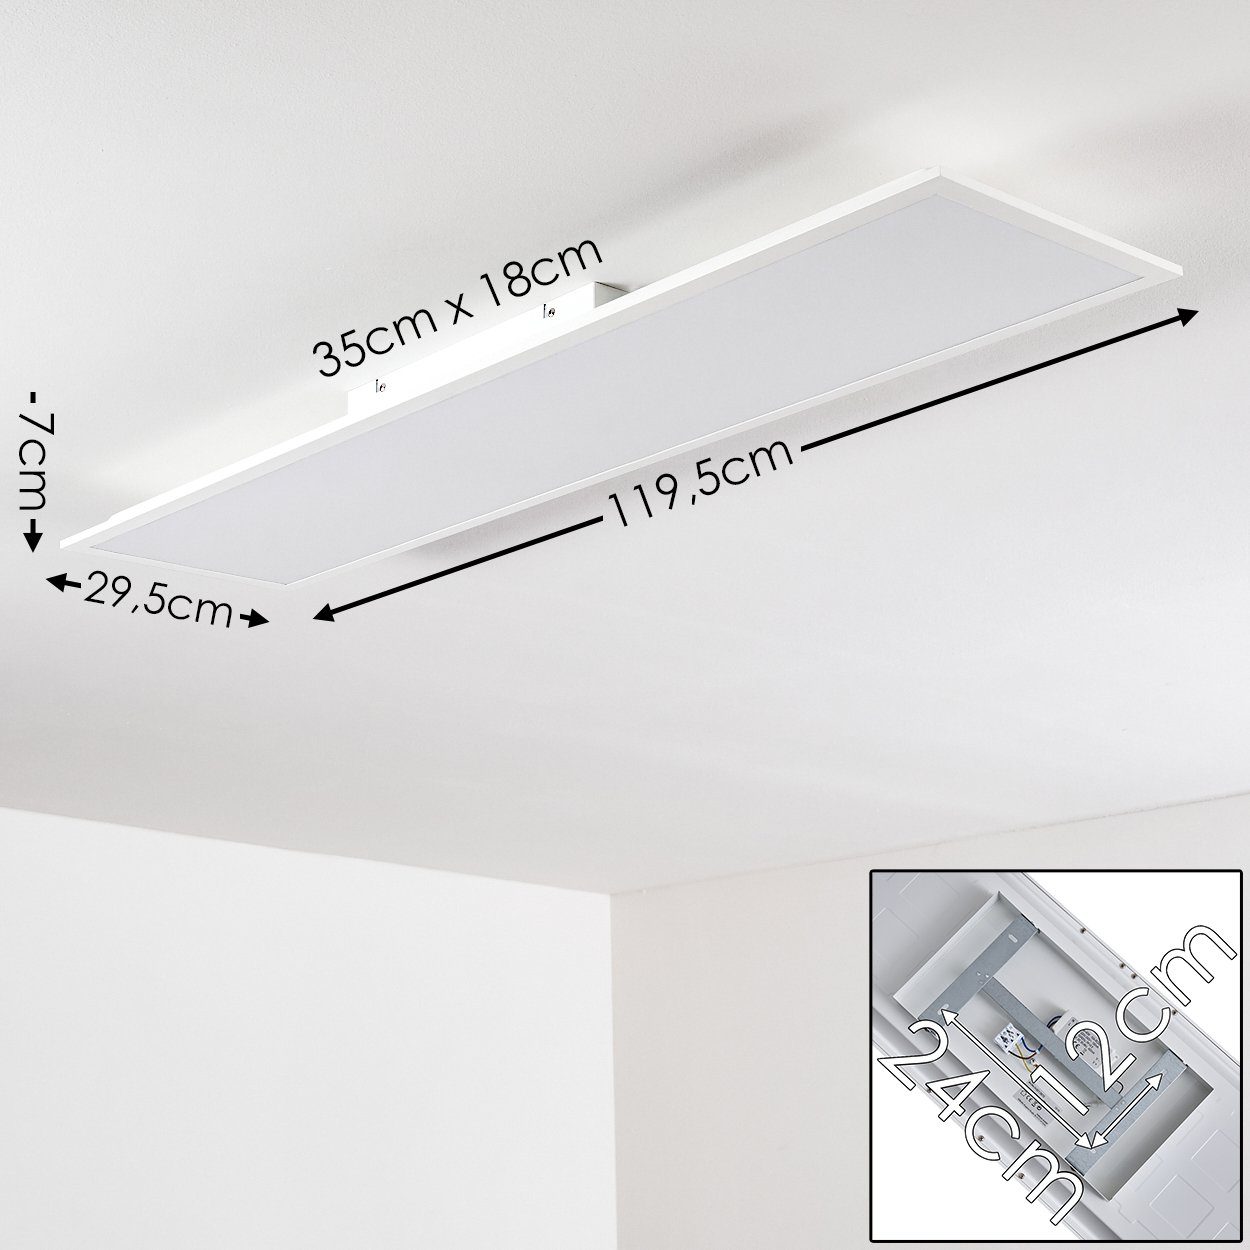 aus Panel, 3000 rechteckiges moderne 4000 LED hofstein in Kelvin, Weiß, Panel Deckenpanel Kunststoff »Posmon« Lumen, Deckenpanel